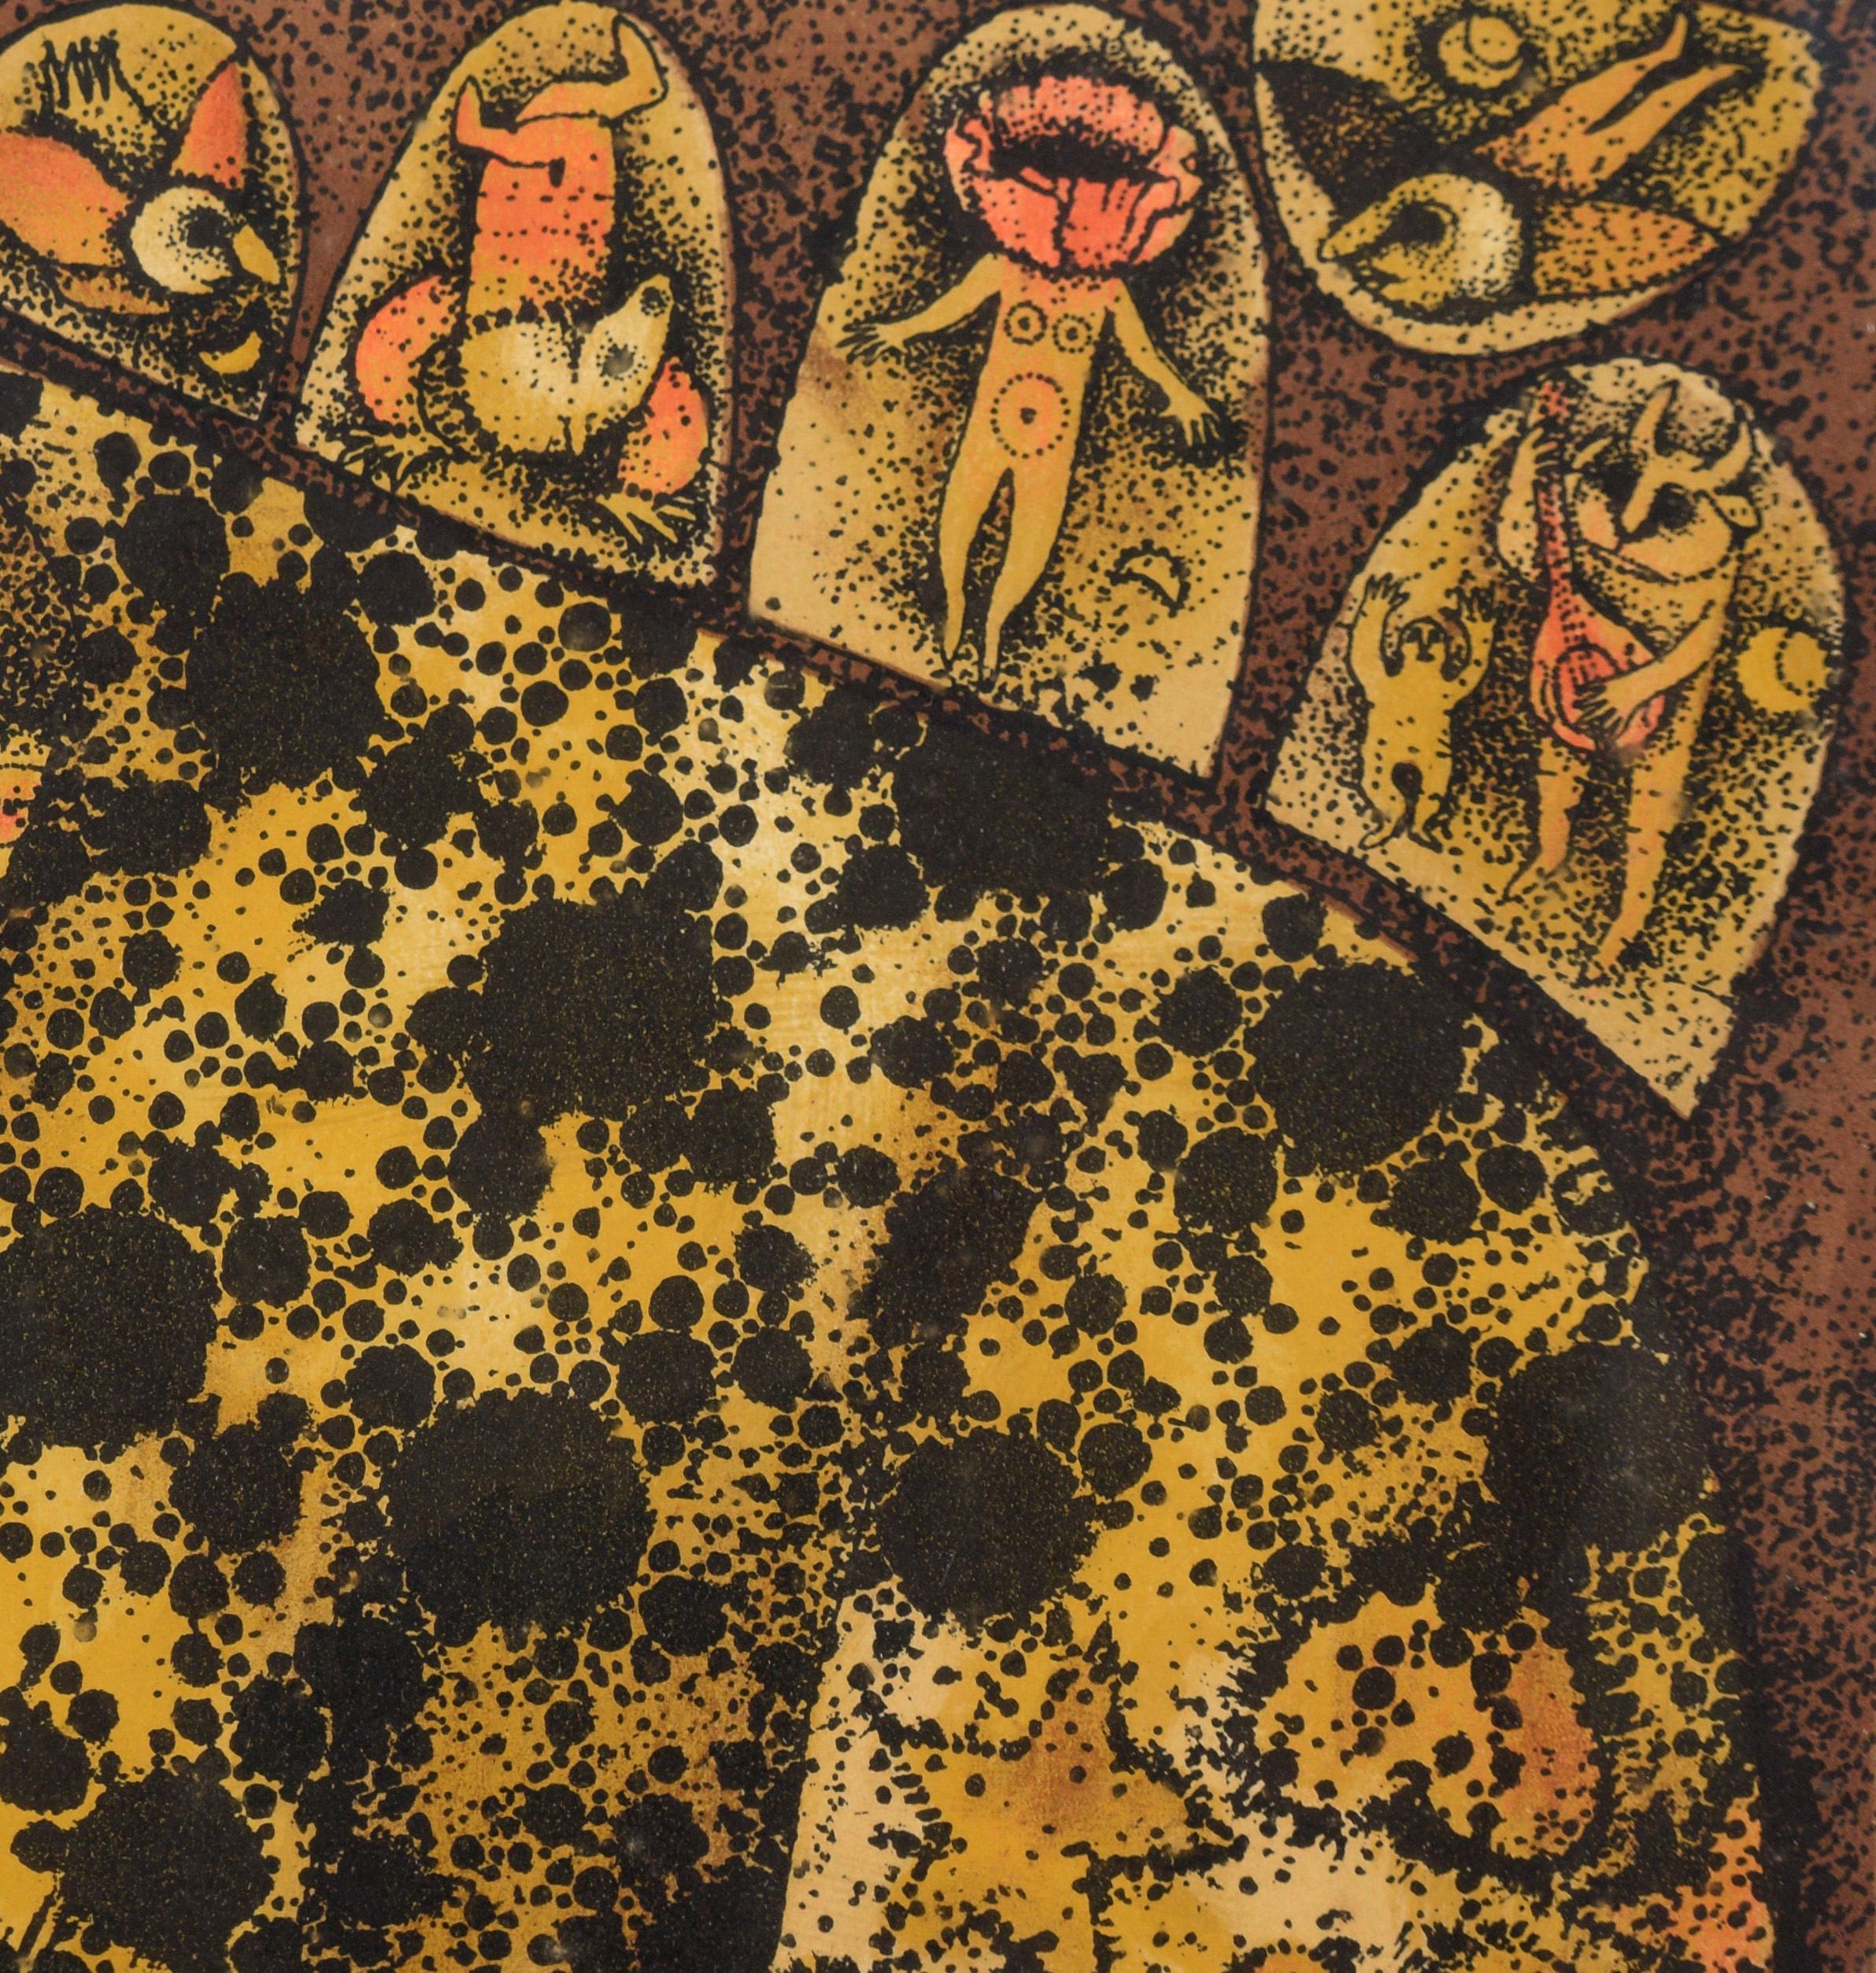 „Leopard Dreaming“ – Fantasie-Lithographie in Tinte auf Papier

Kräftige Lithografie eines Leoparden von Carol Jablonsky (Amerikanerin, 1932-1992). Ein Leopard ist in einer fantastischen, surrealistischen Weise dargestellt, mit Symbolen in der